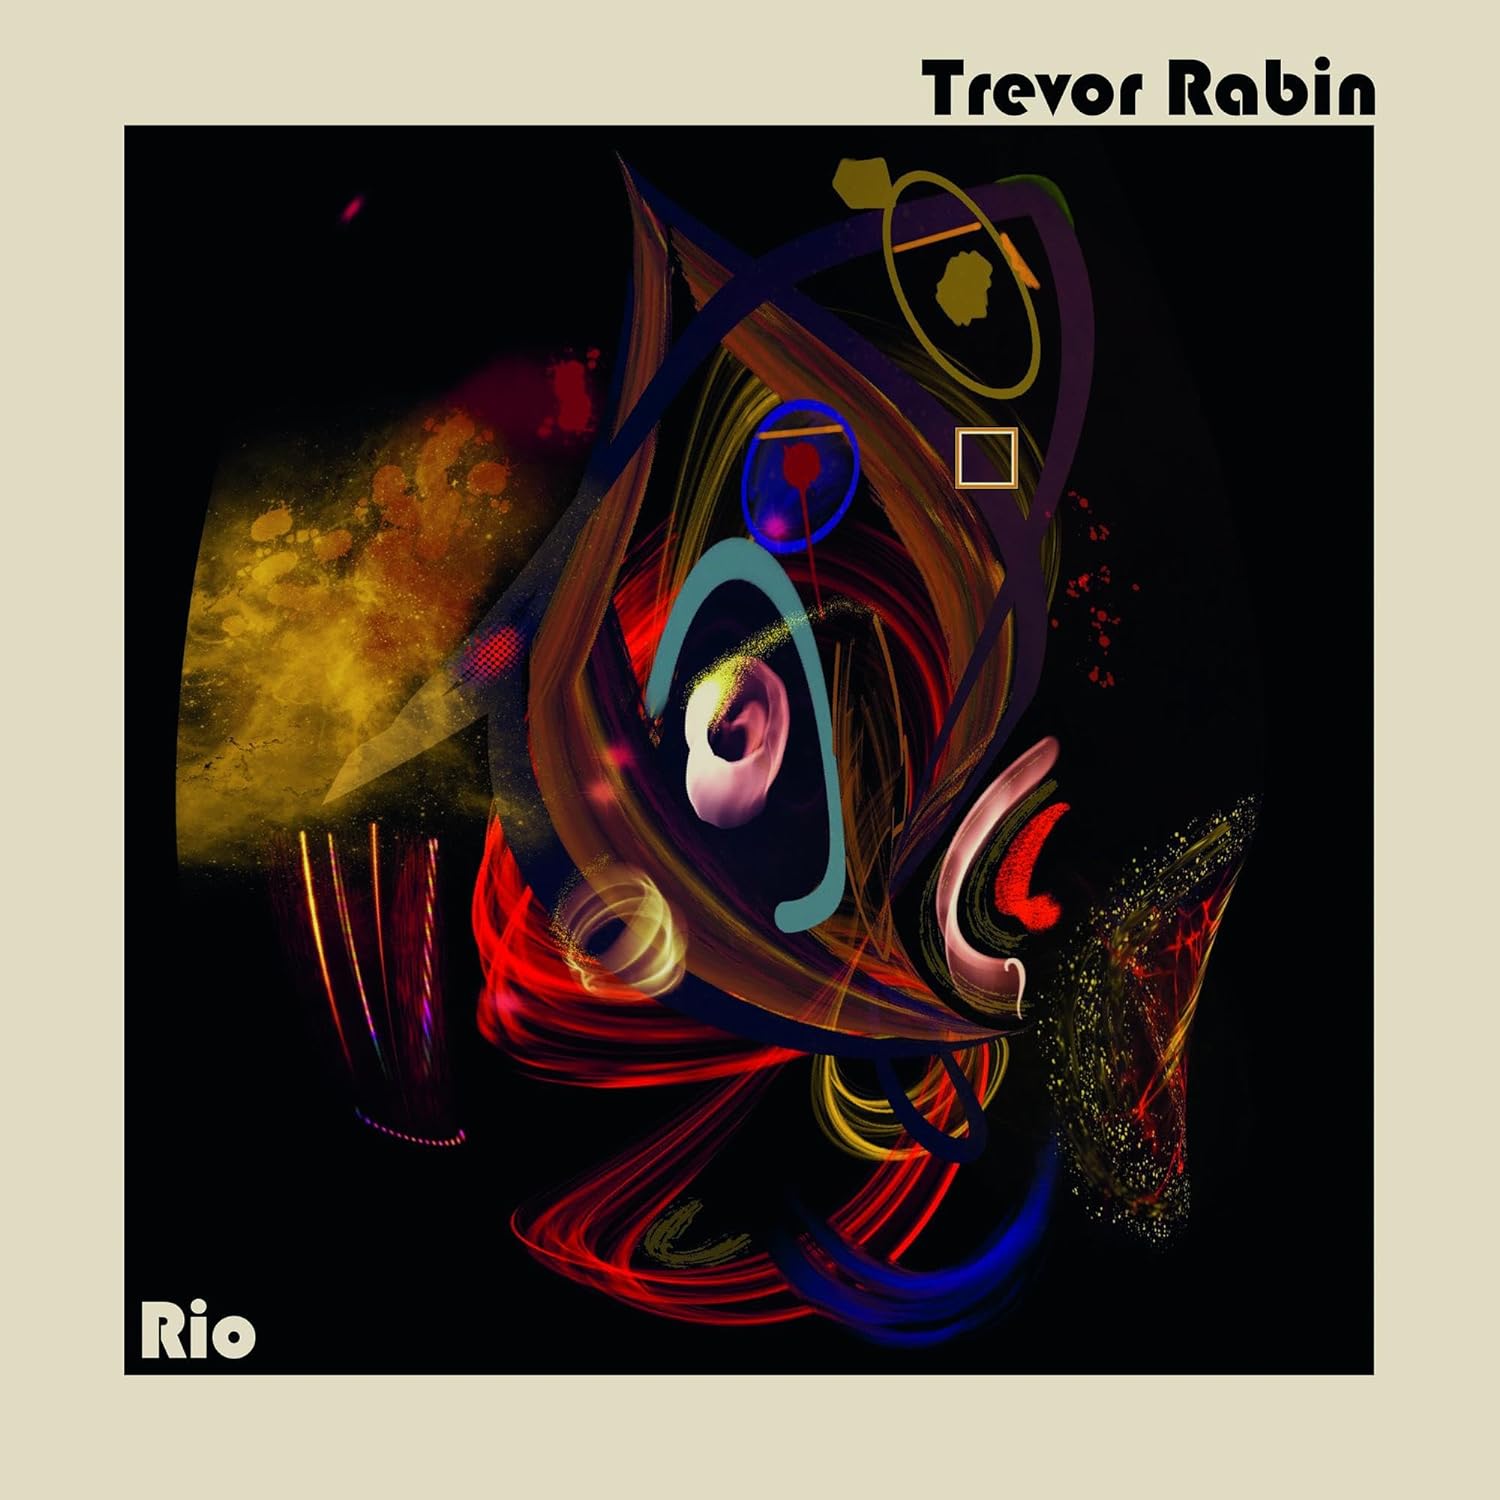 CD/BluRay - Trevor Rabin - Rio – Encore Records Ltd